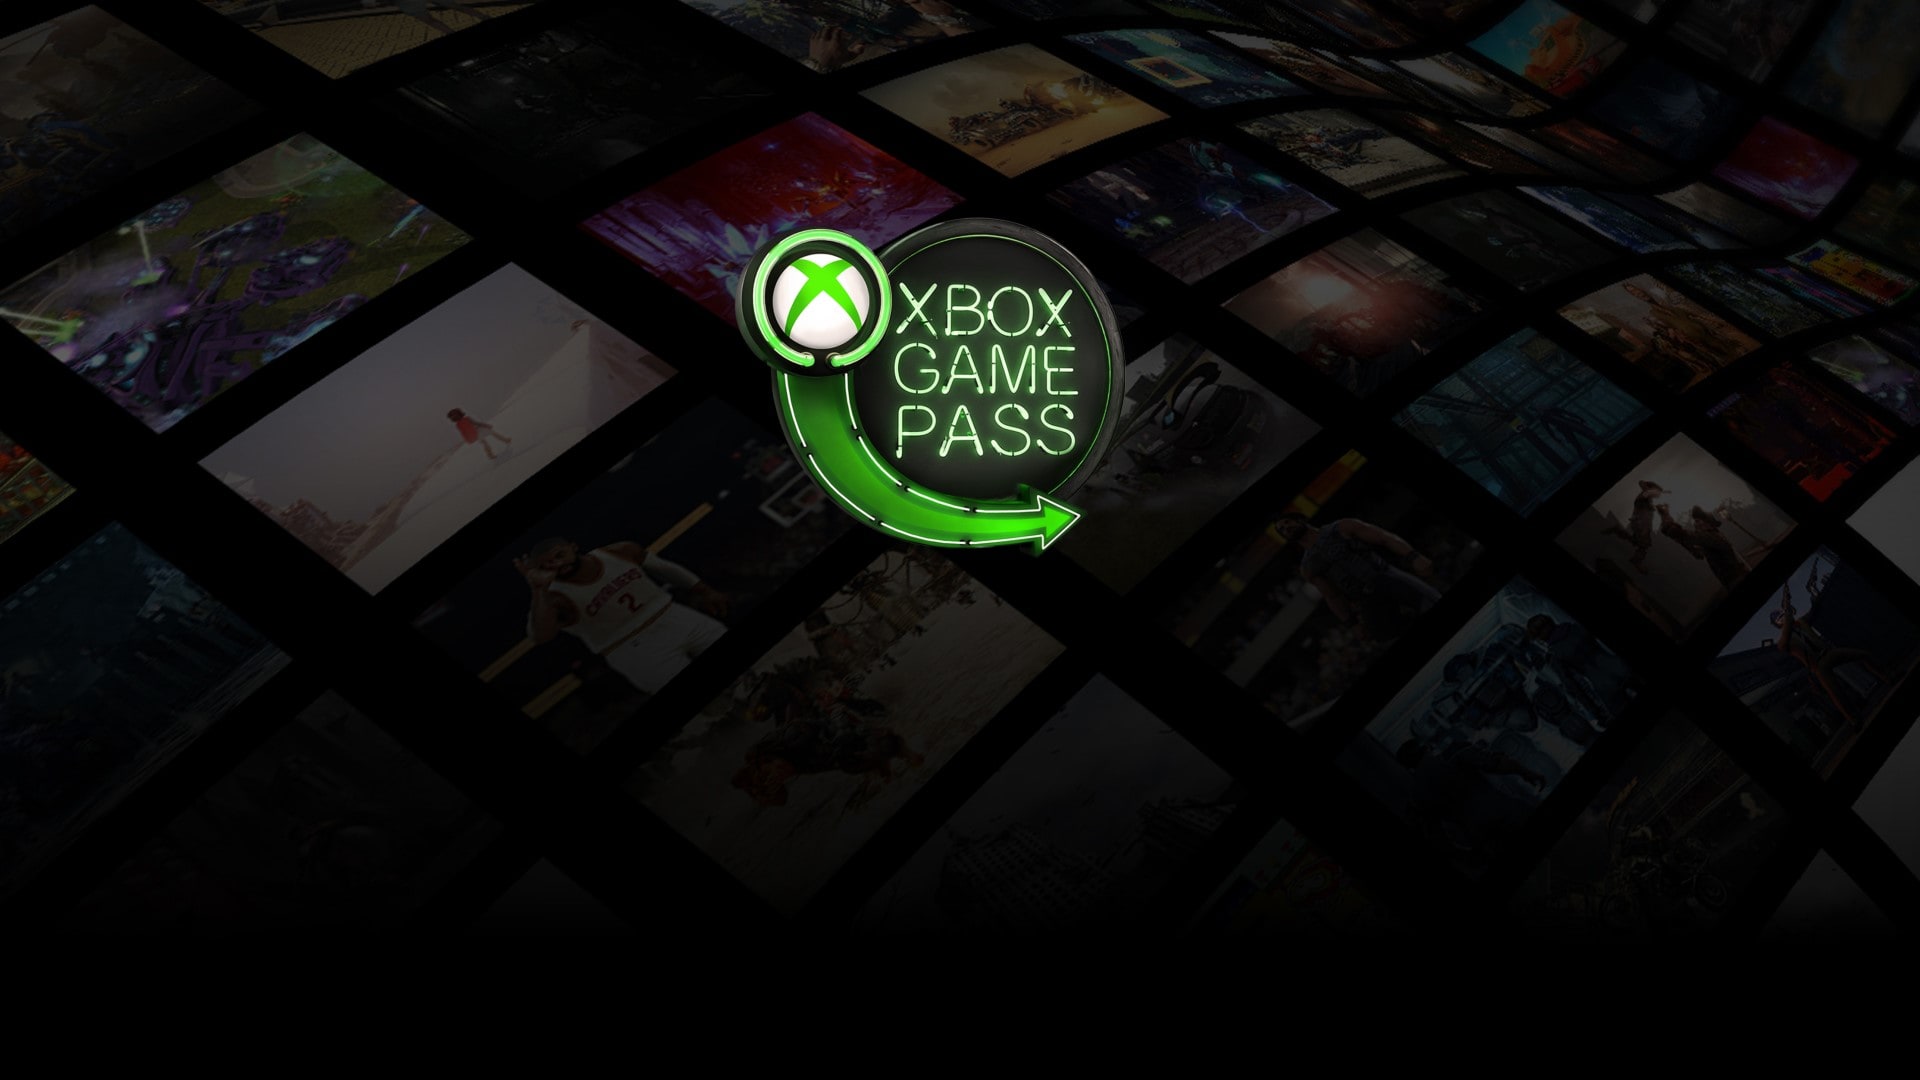  เกม 7 เกม จะถูกถอดออกจาก Xbox Game Pass ในเร็วๆ นี้ และเป็น Battlefield อยู่หลายเกม